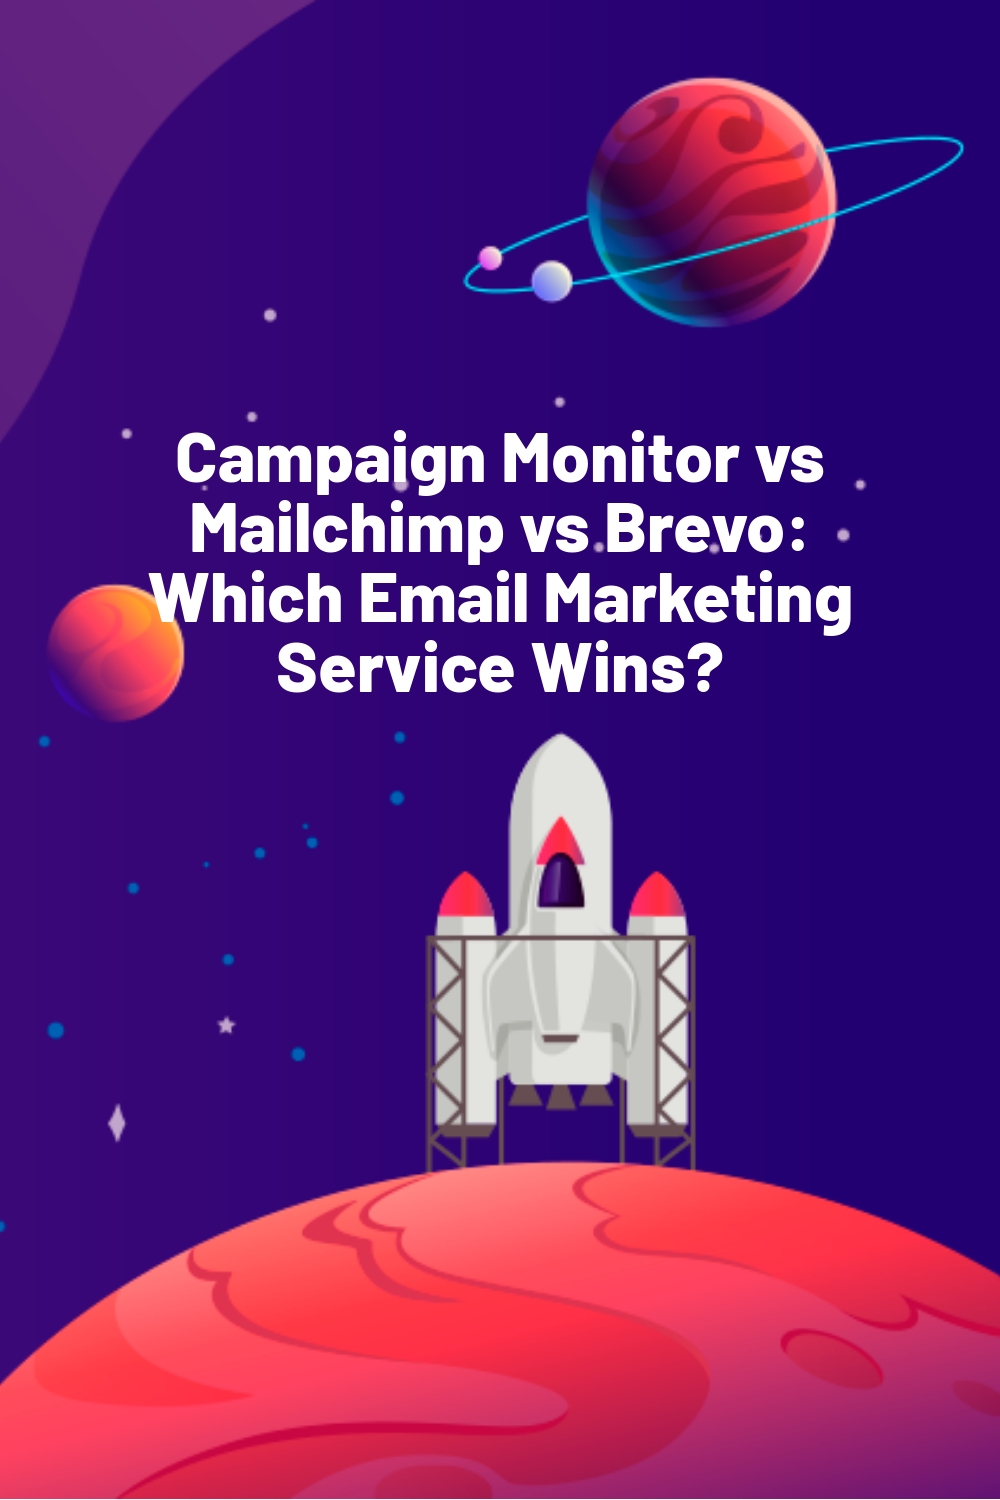 Campaign Monitor vs Mailchimp vs Brevo: Which Email Marketing Service Wins?